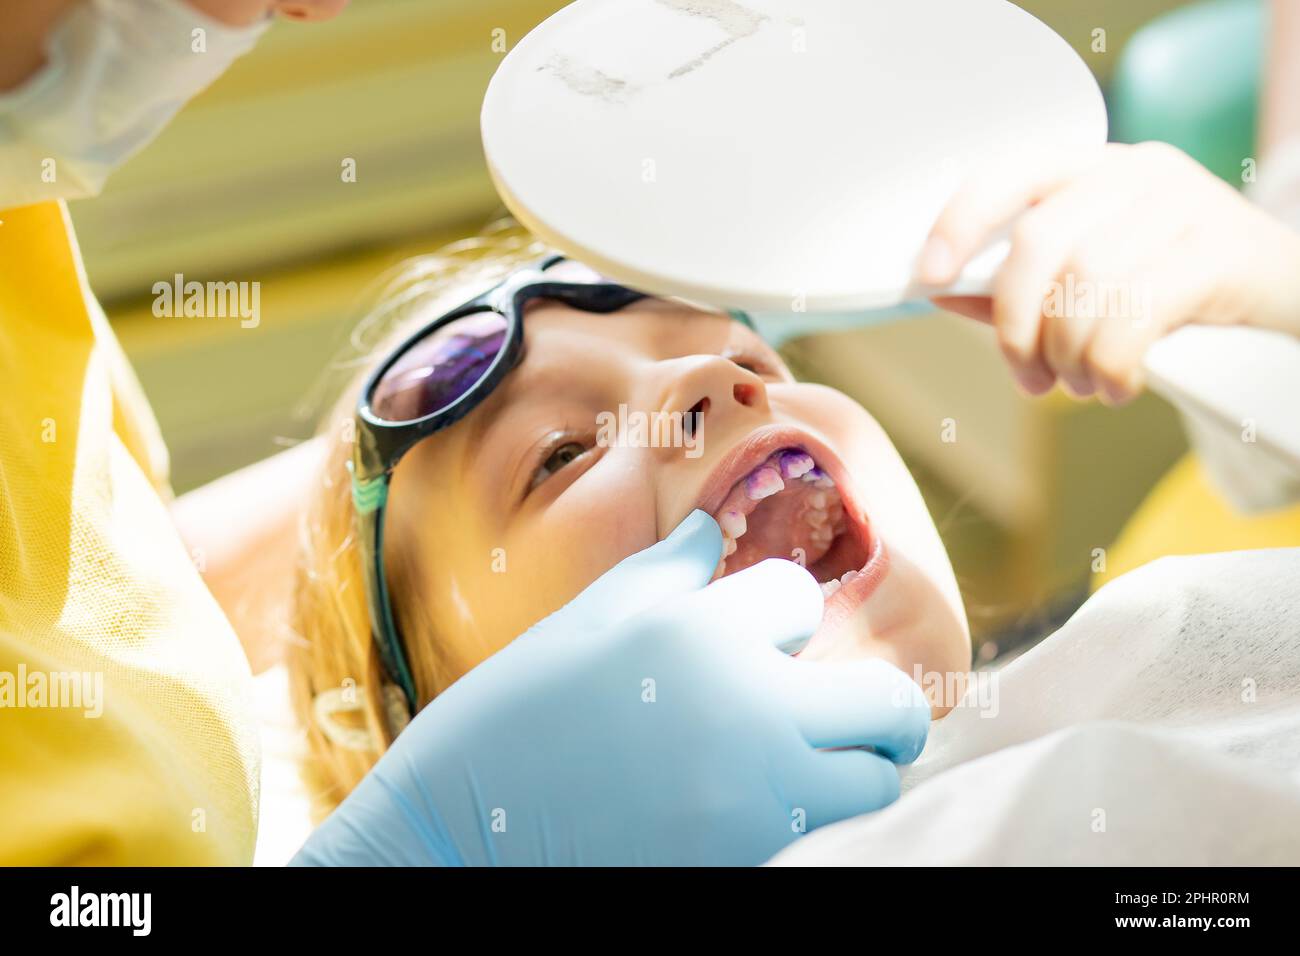 Plaque sur les dents de couleur rose et pourpre.bain de bouche pour bébé. Visite dentaire. Dents avant et après le brossage et le blanchiment en une seule photo. Préventif Banque D'Images